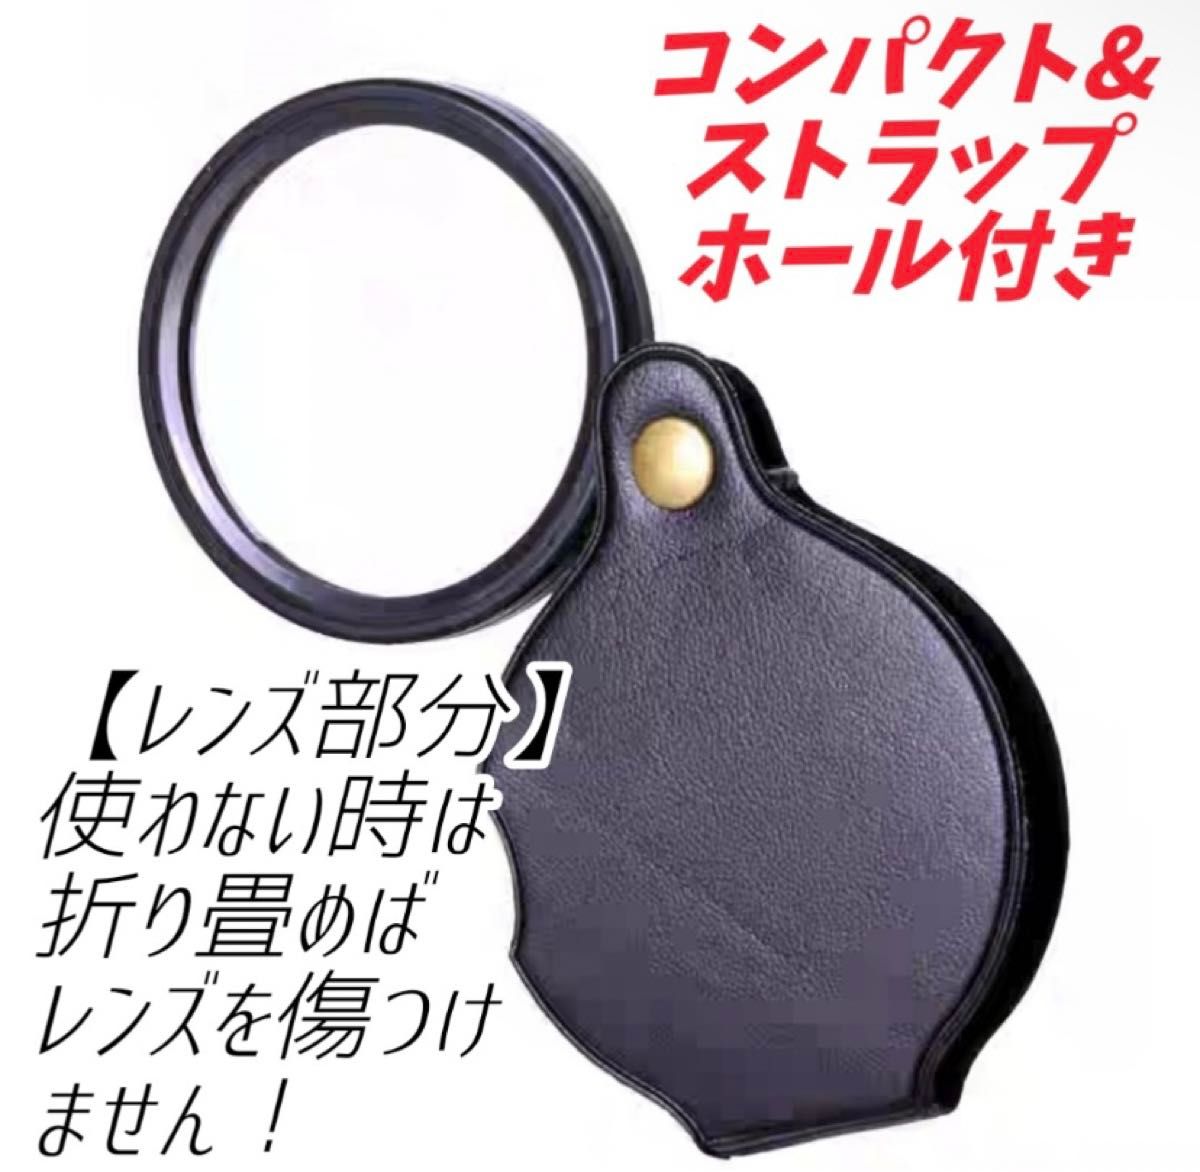 拡大鏡 ルーペ 折りたたみ式 レンズ コンパクト 虫眼鏡 読書 携帯便利